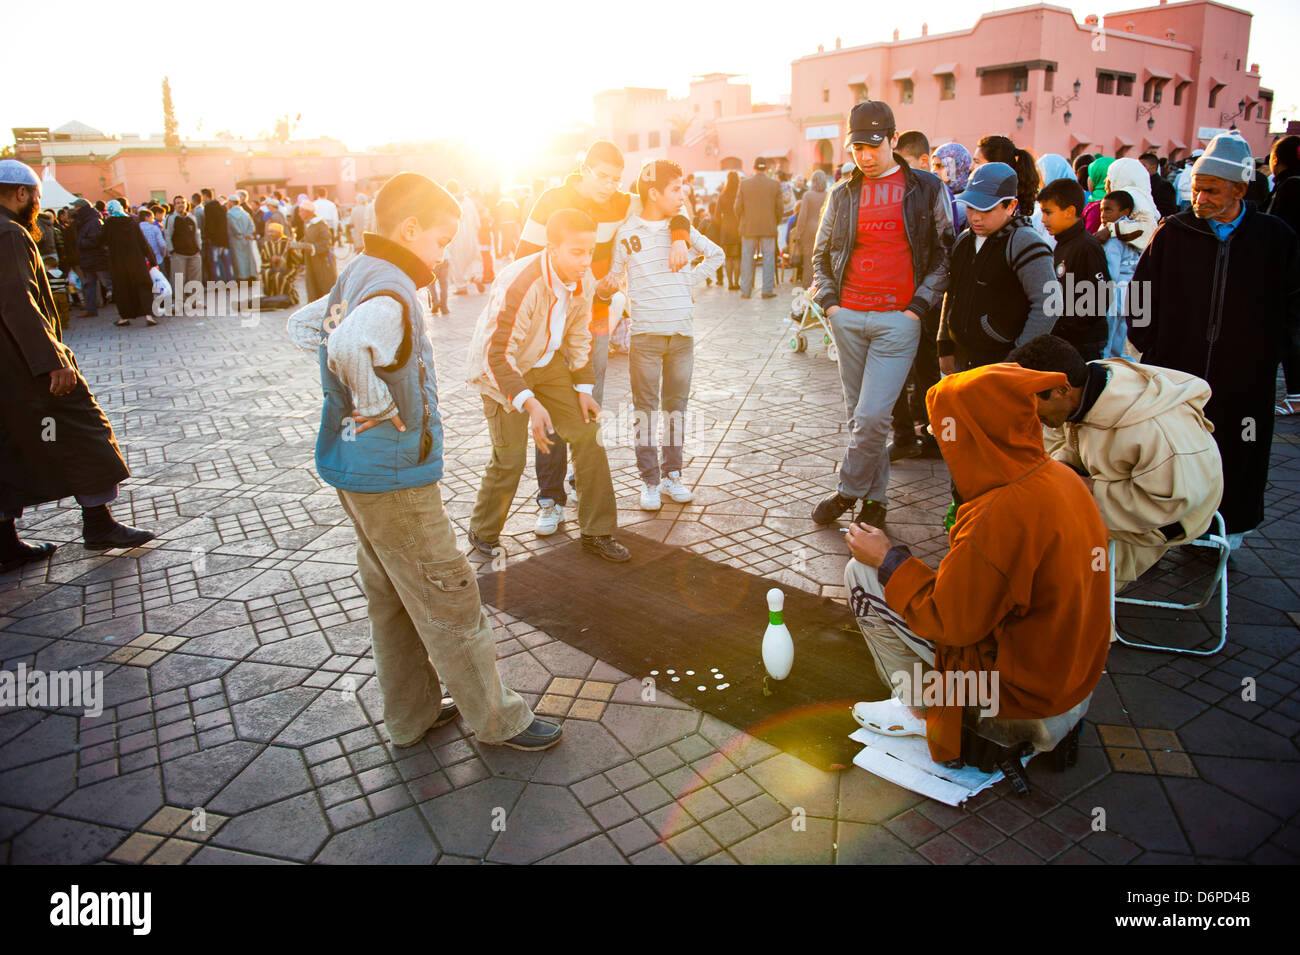 Peuple Marocain jouer jeux de rue à la place Jamaa El Fna, la célèbre place de Marrakech, Maroc, Afrique du Nord, Afrique Banque D'Images